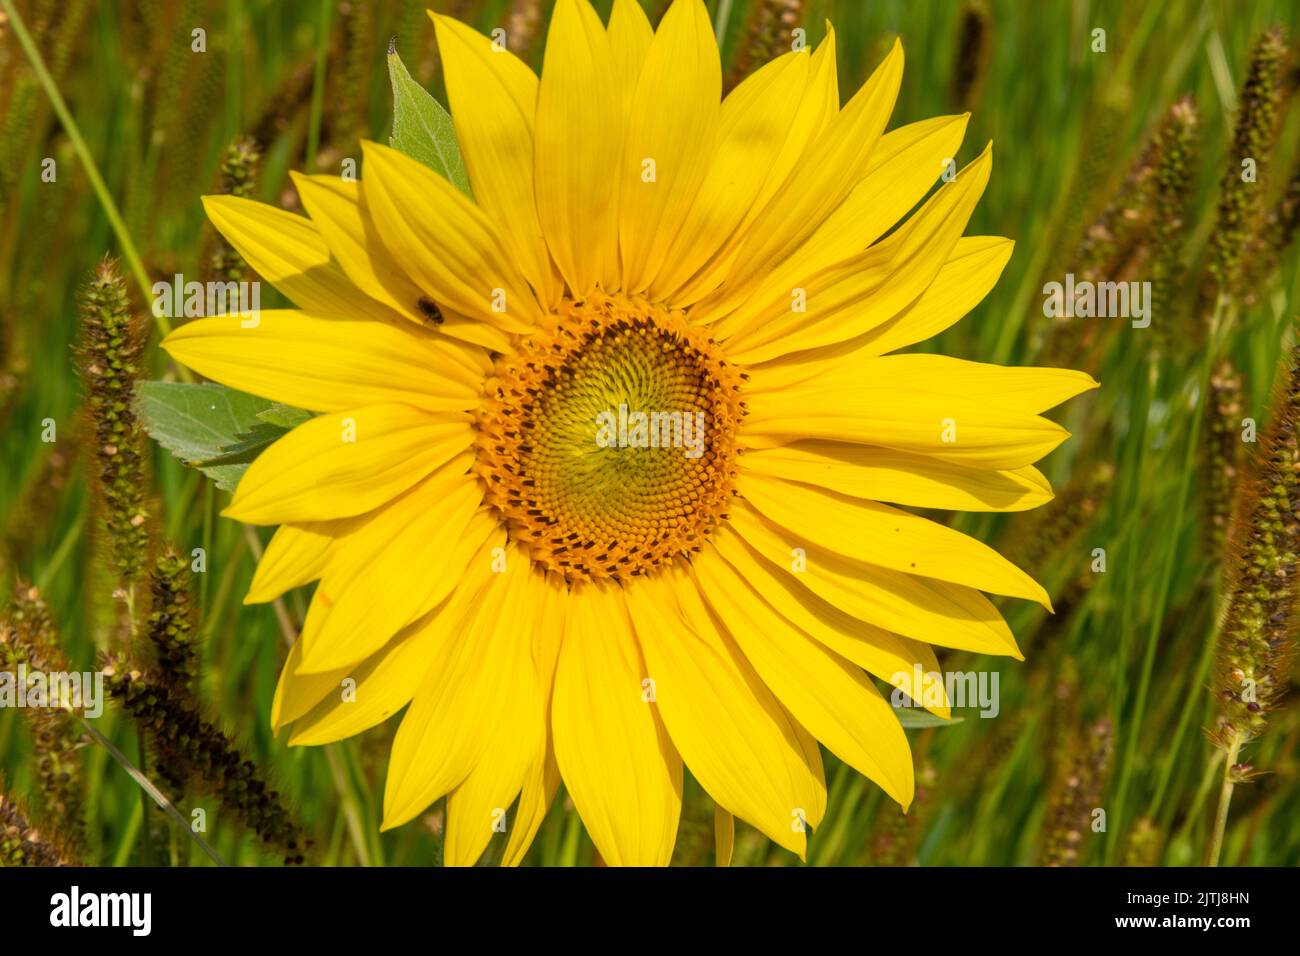 Girasol en el campo de hierba foxtail Foto de stock